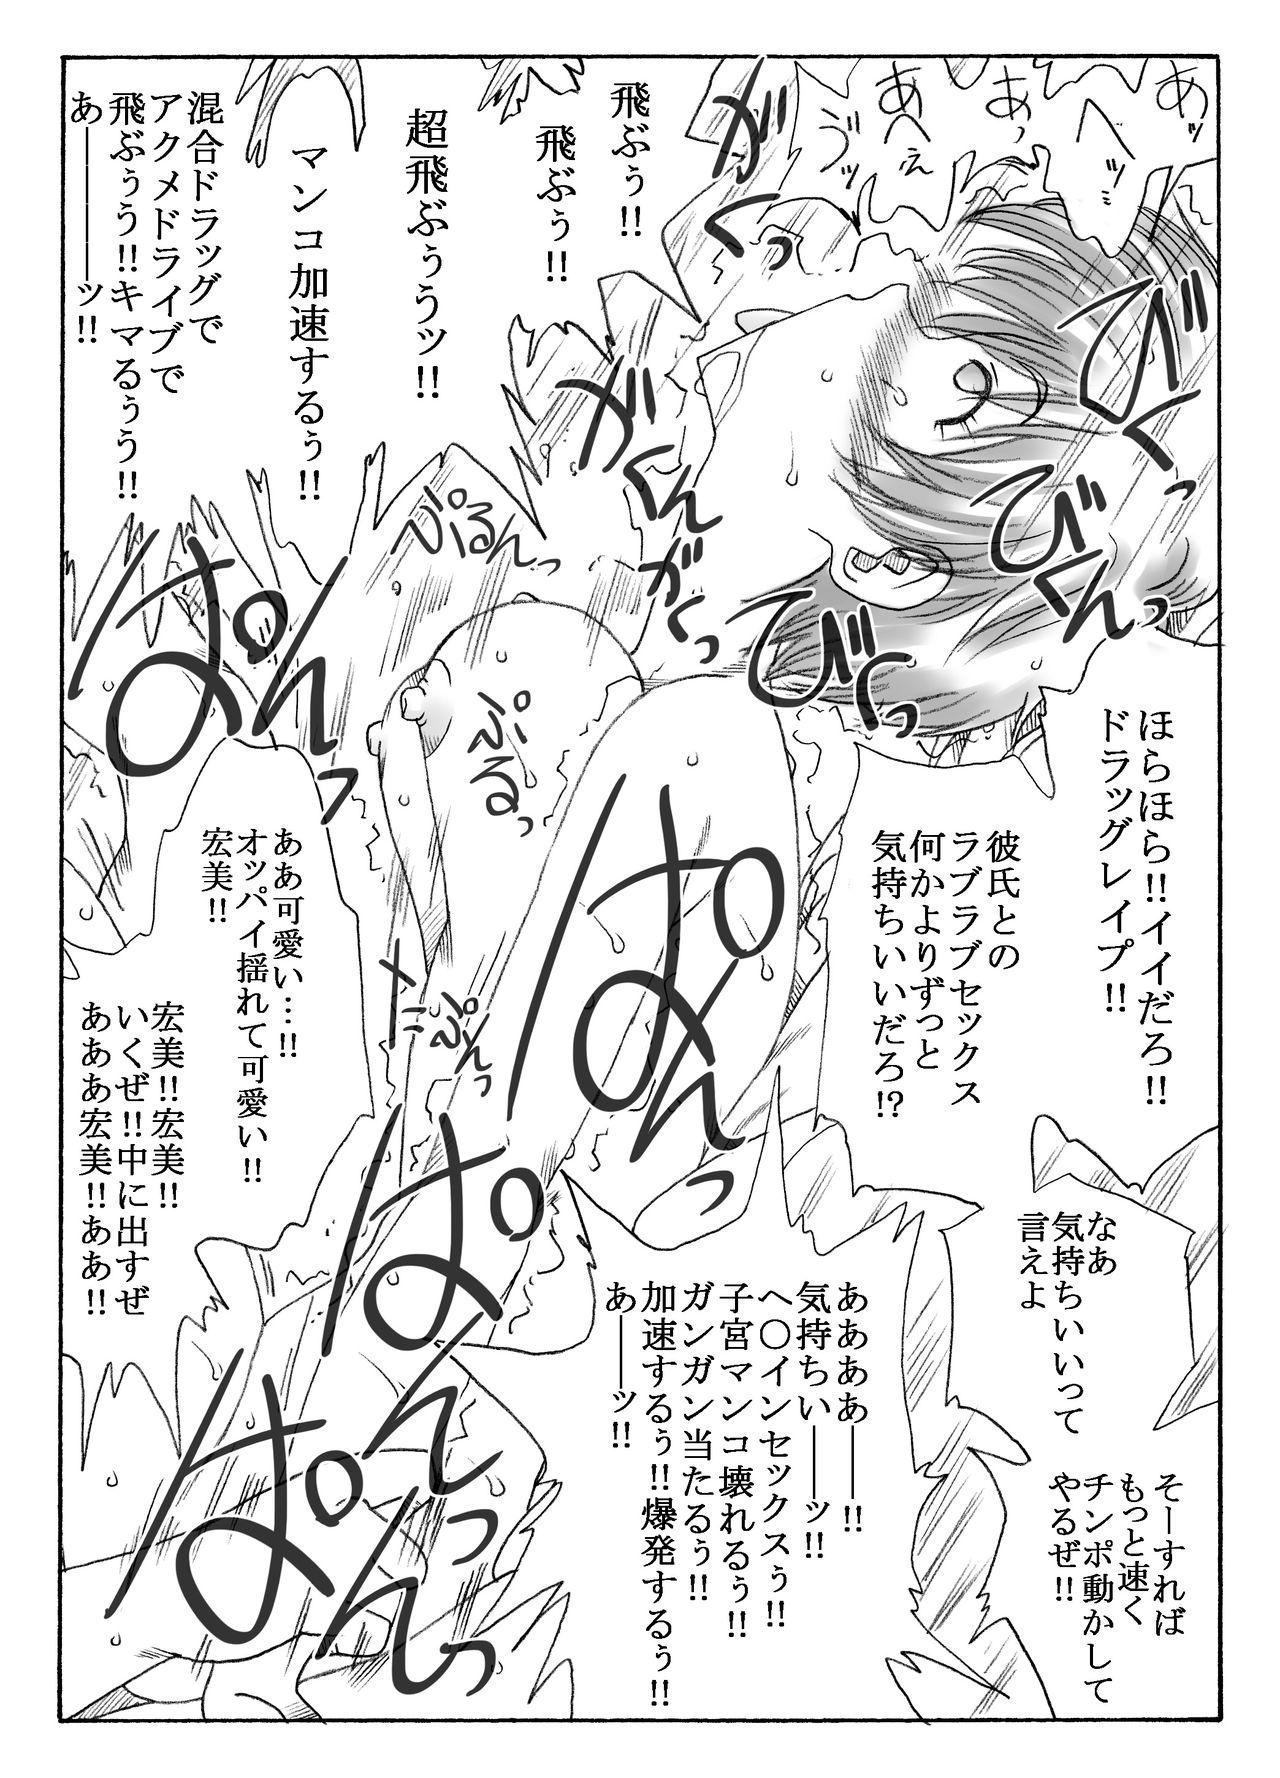 Pussylicking kusuridukinisare ryoujyokusareru senseito seitotachi - Original Amature - Page 5